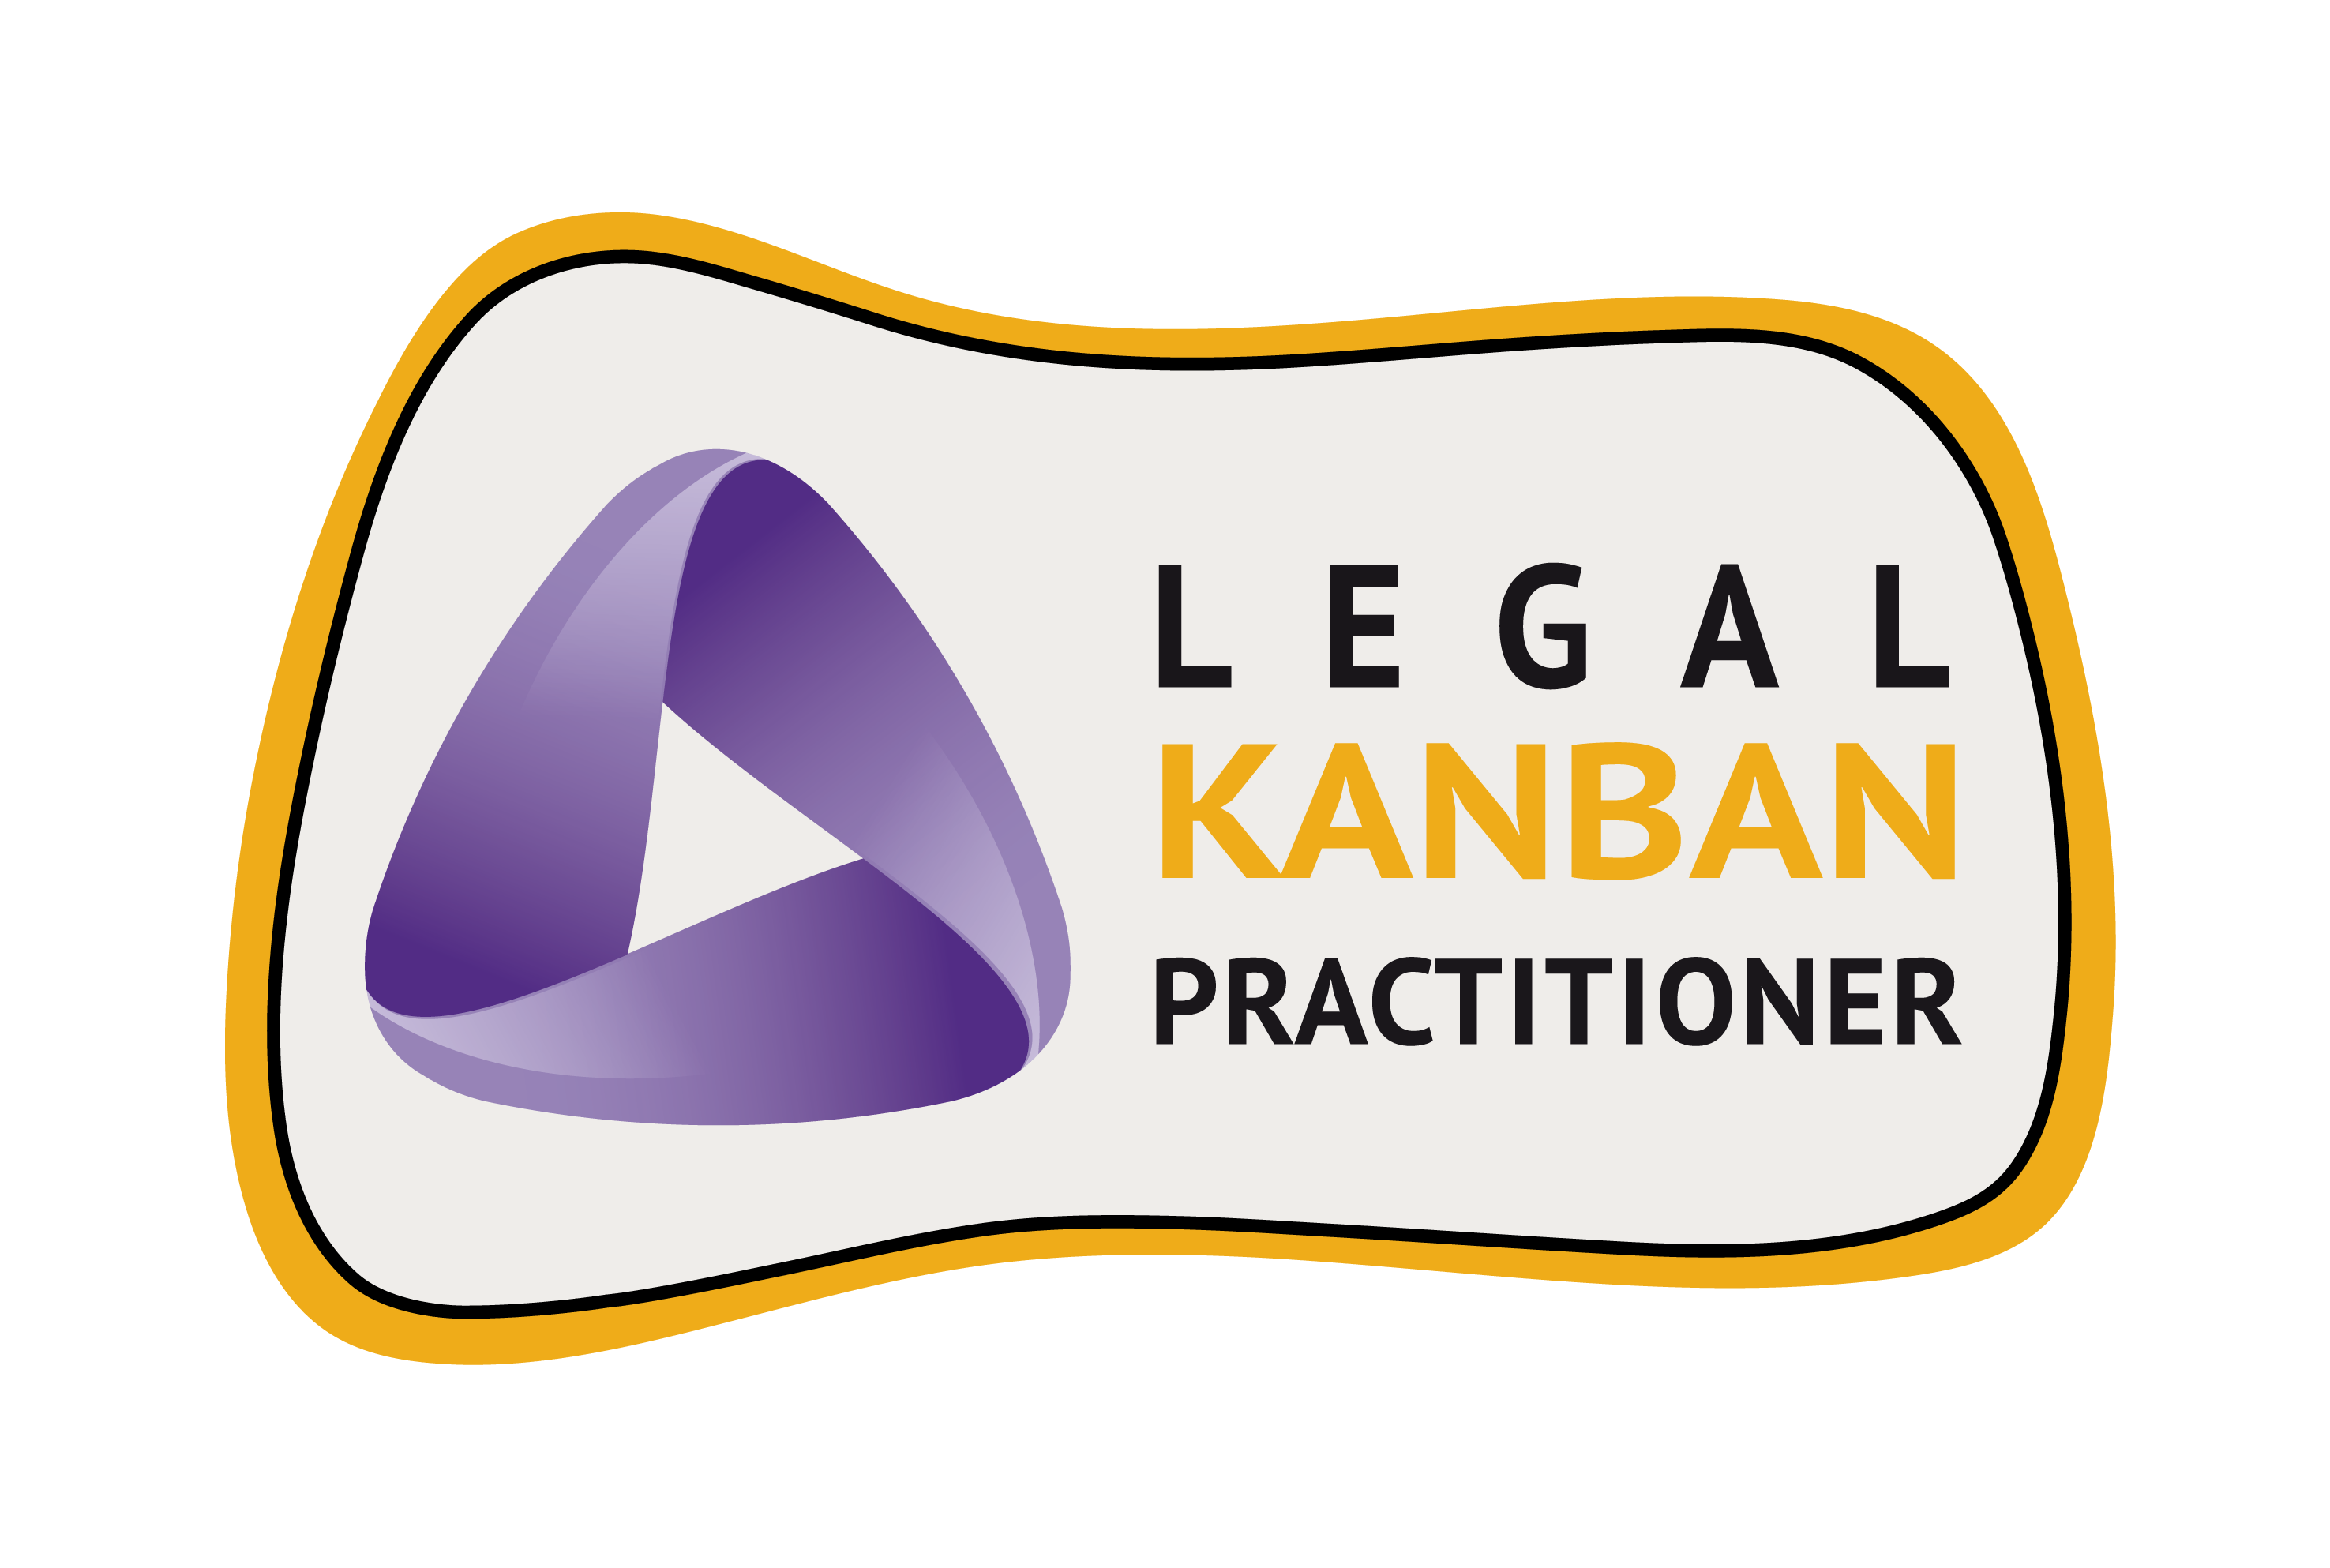 Legal Kanban Practitioner